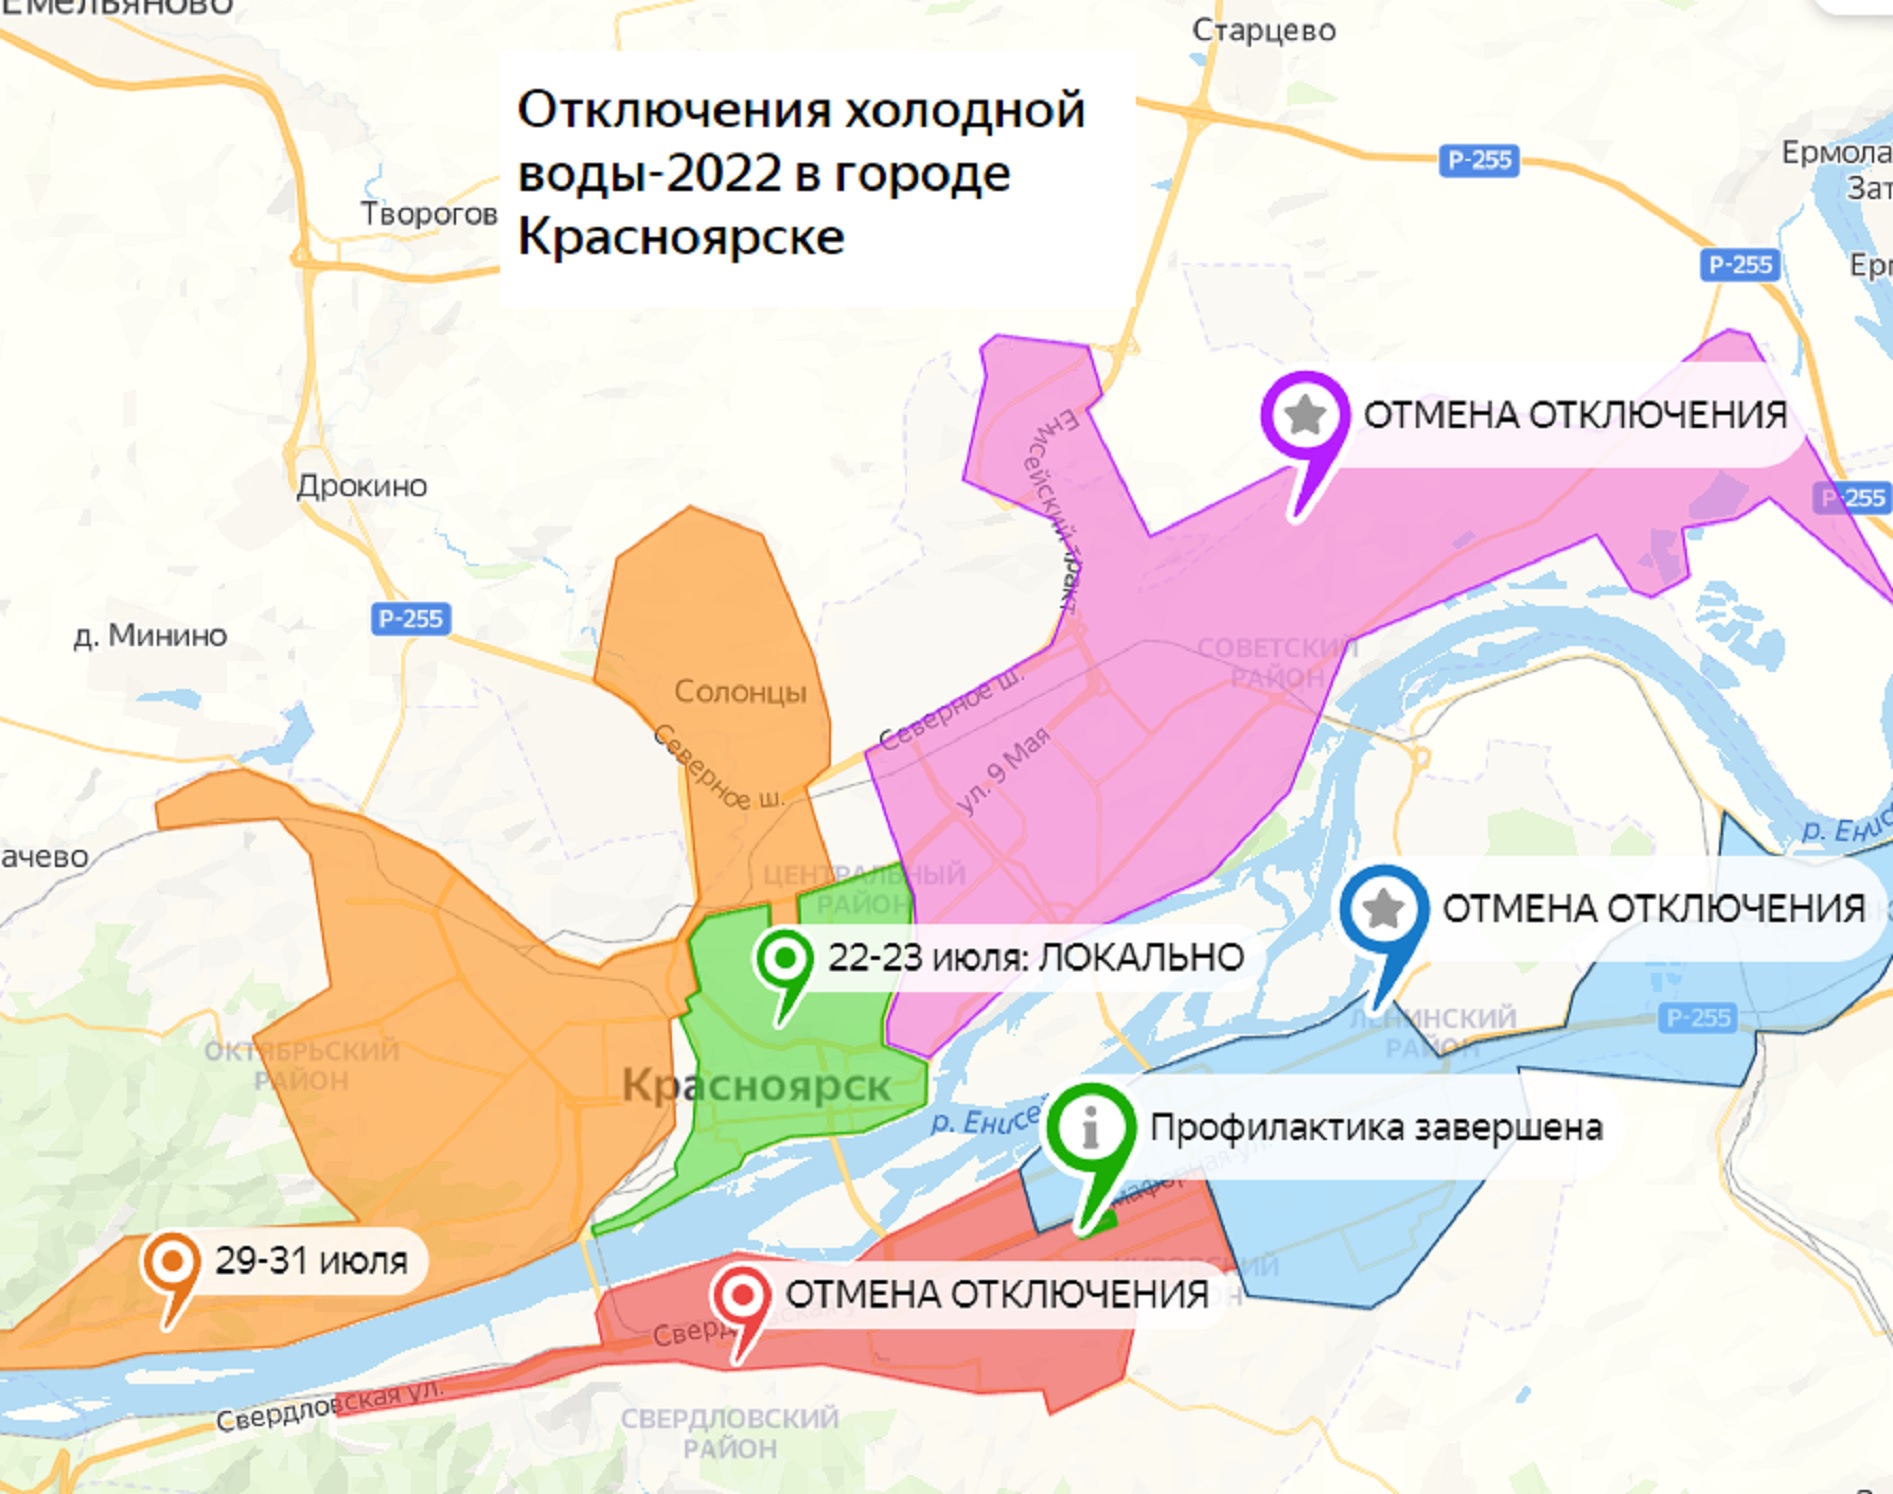 Отключение холодной воды Красноярск 2022 по районам график